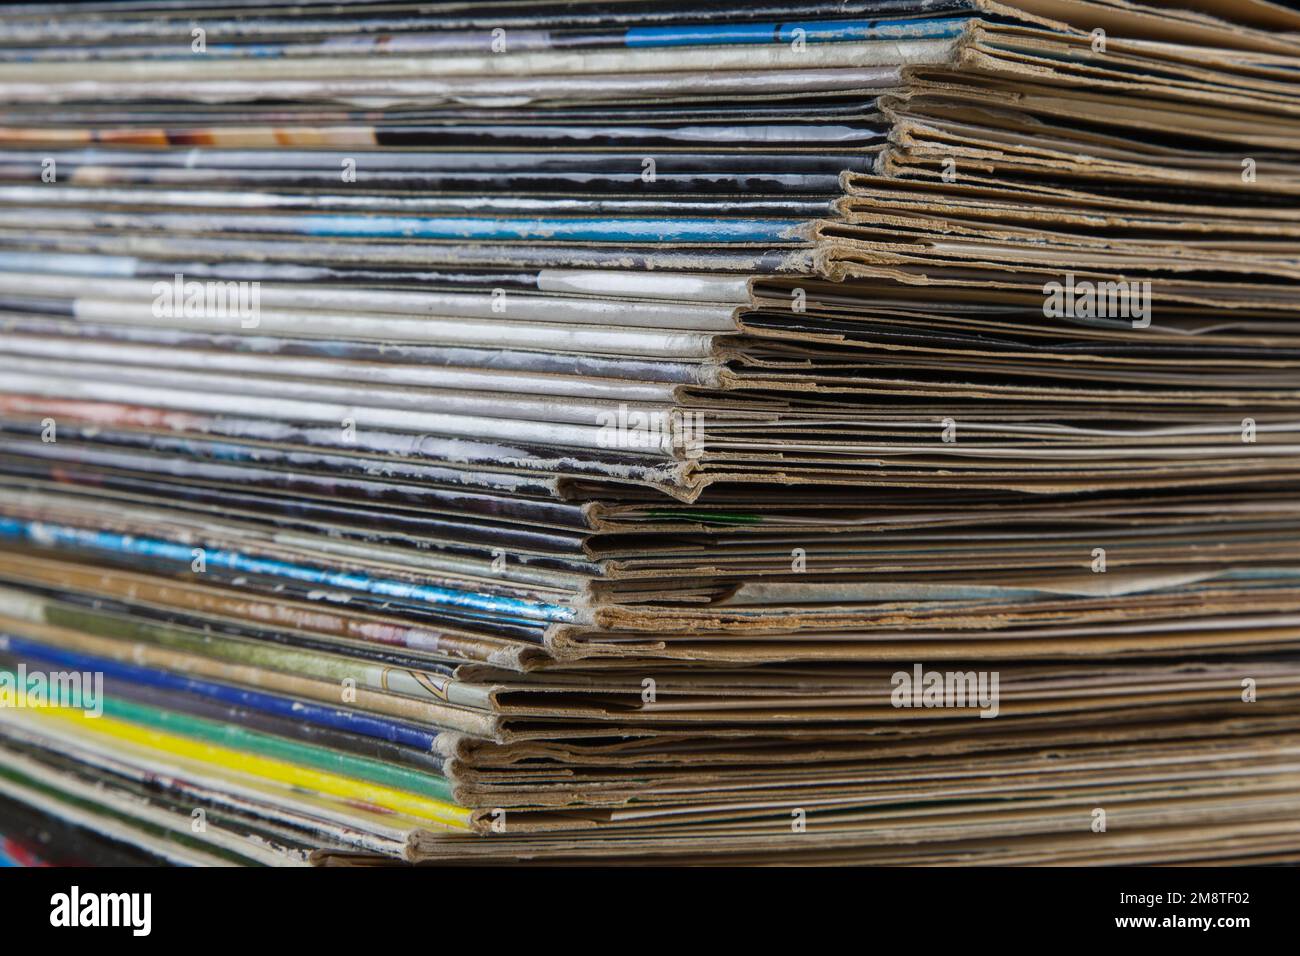 Une pile d'anciens LP couvre des disques de longue durée, un morceau de l'histoire contemporaine dans un monde de services de streaming. Banque D'Images